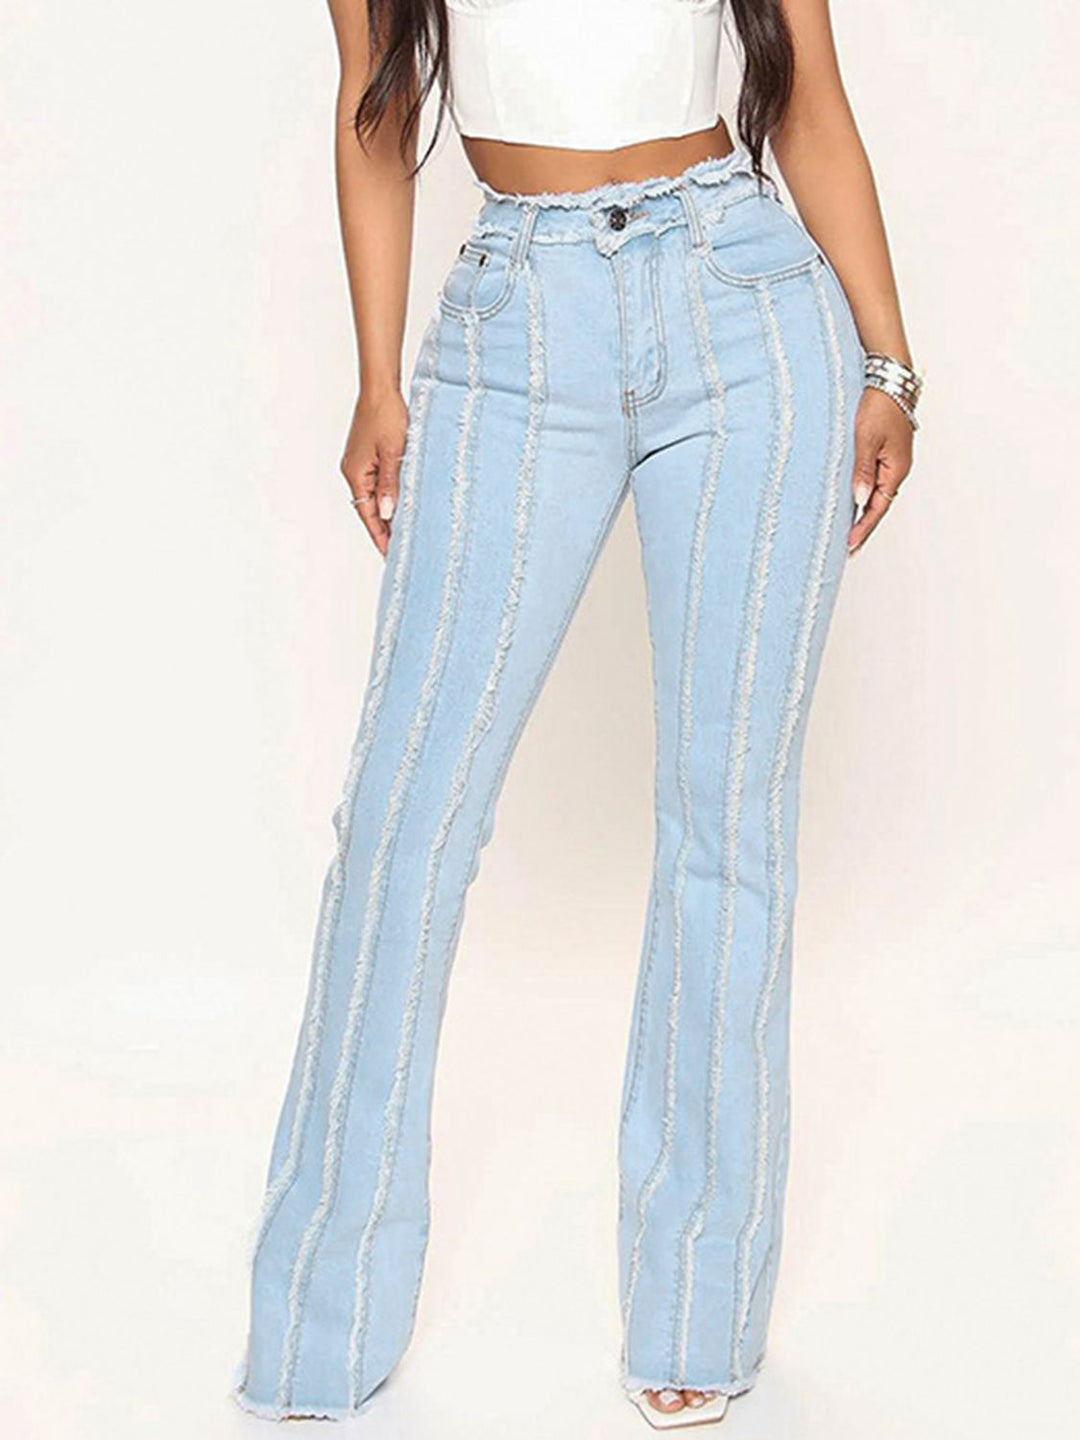 GYPSY-Striped Raw Hem Jeans